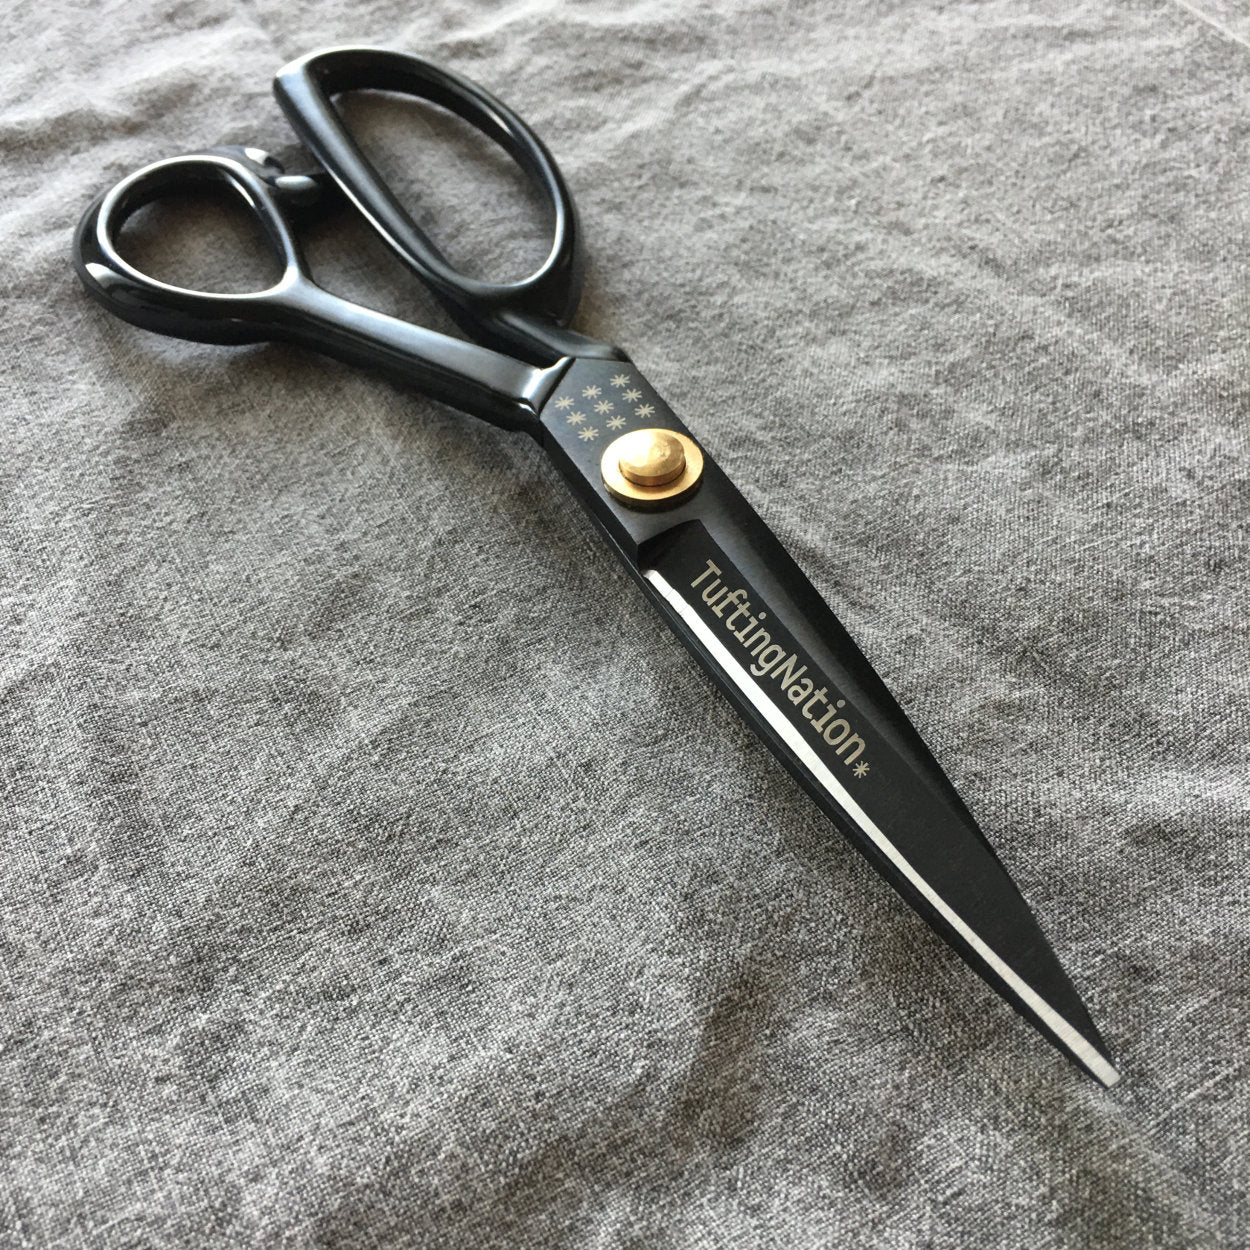 8 Black Tufting Scissors for Rug Making